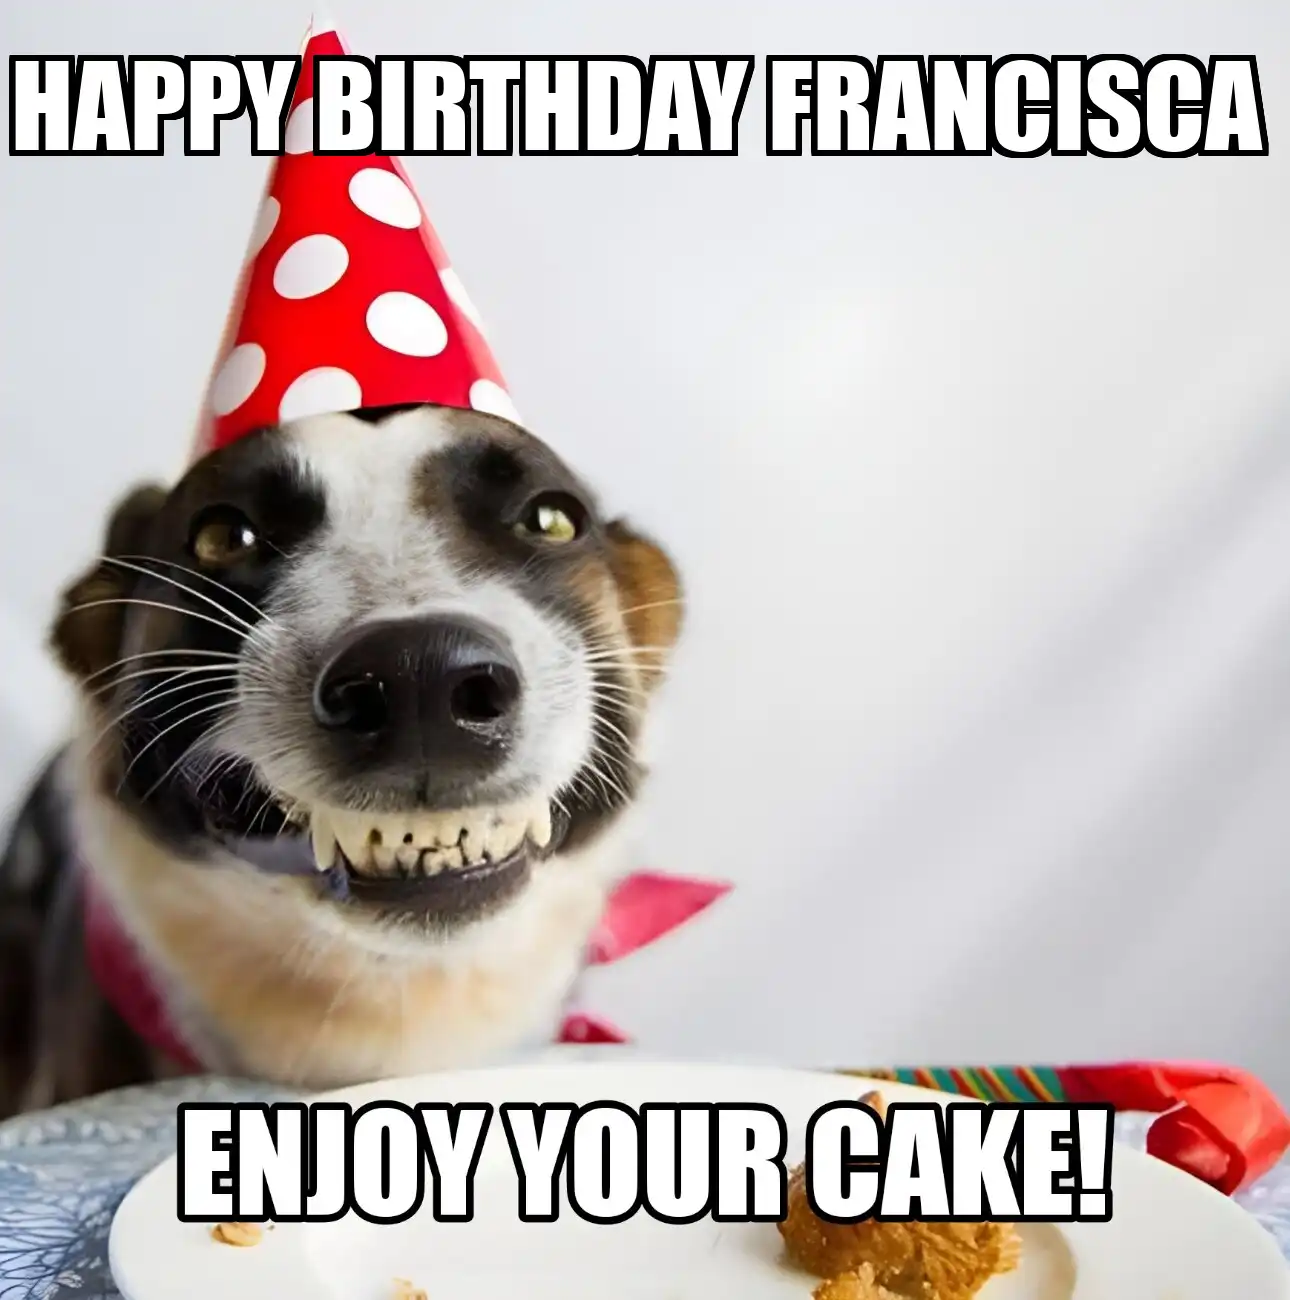 Happy Birthday Francisca Enjoy Your Cake Dog Meme